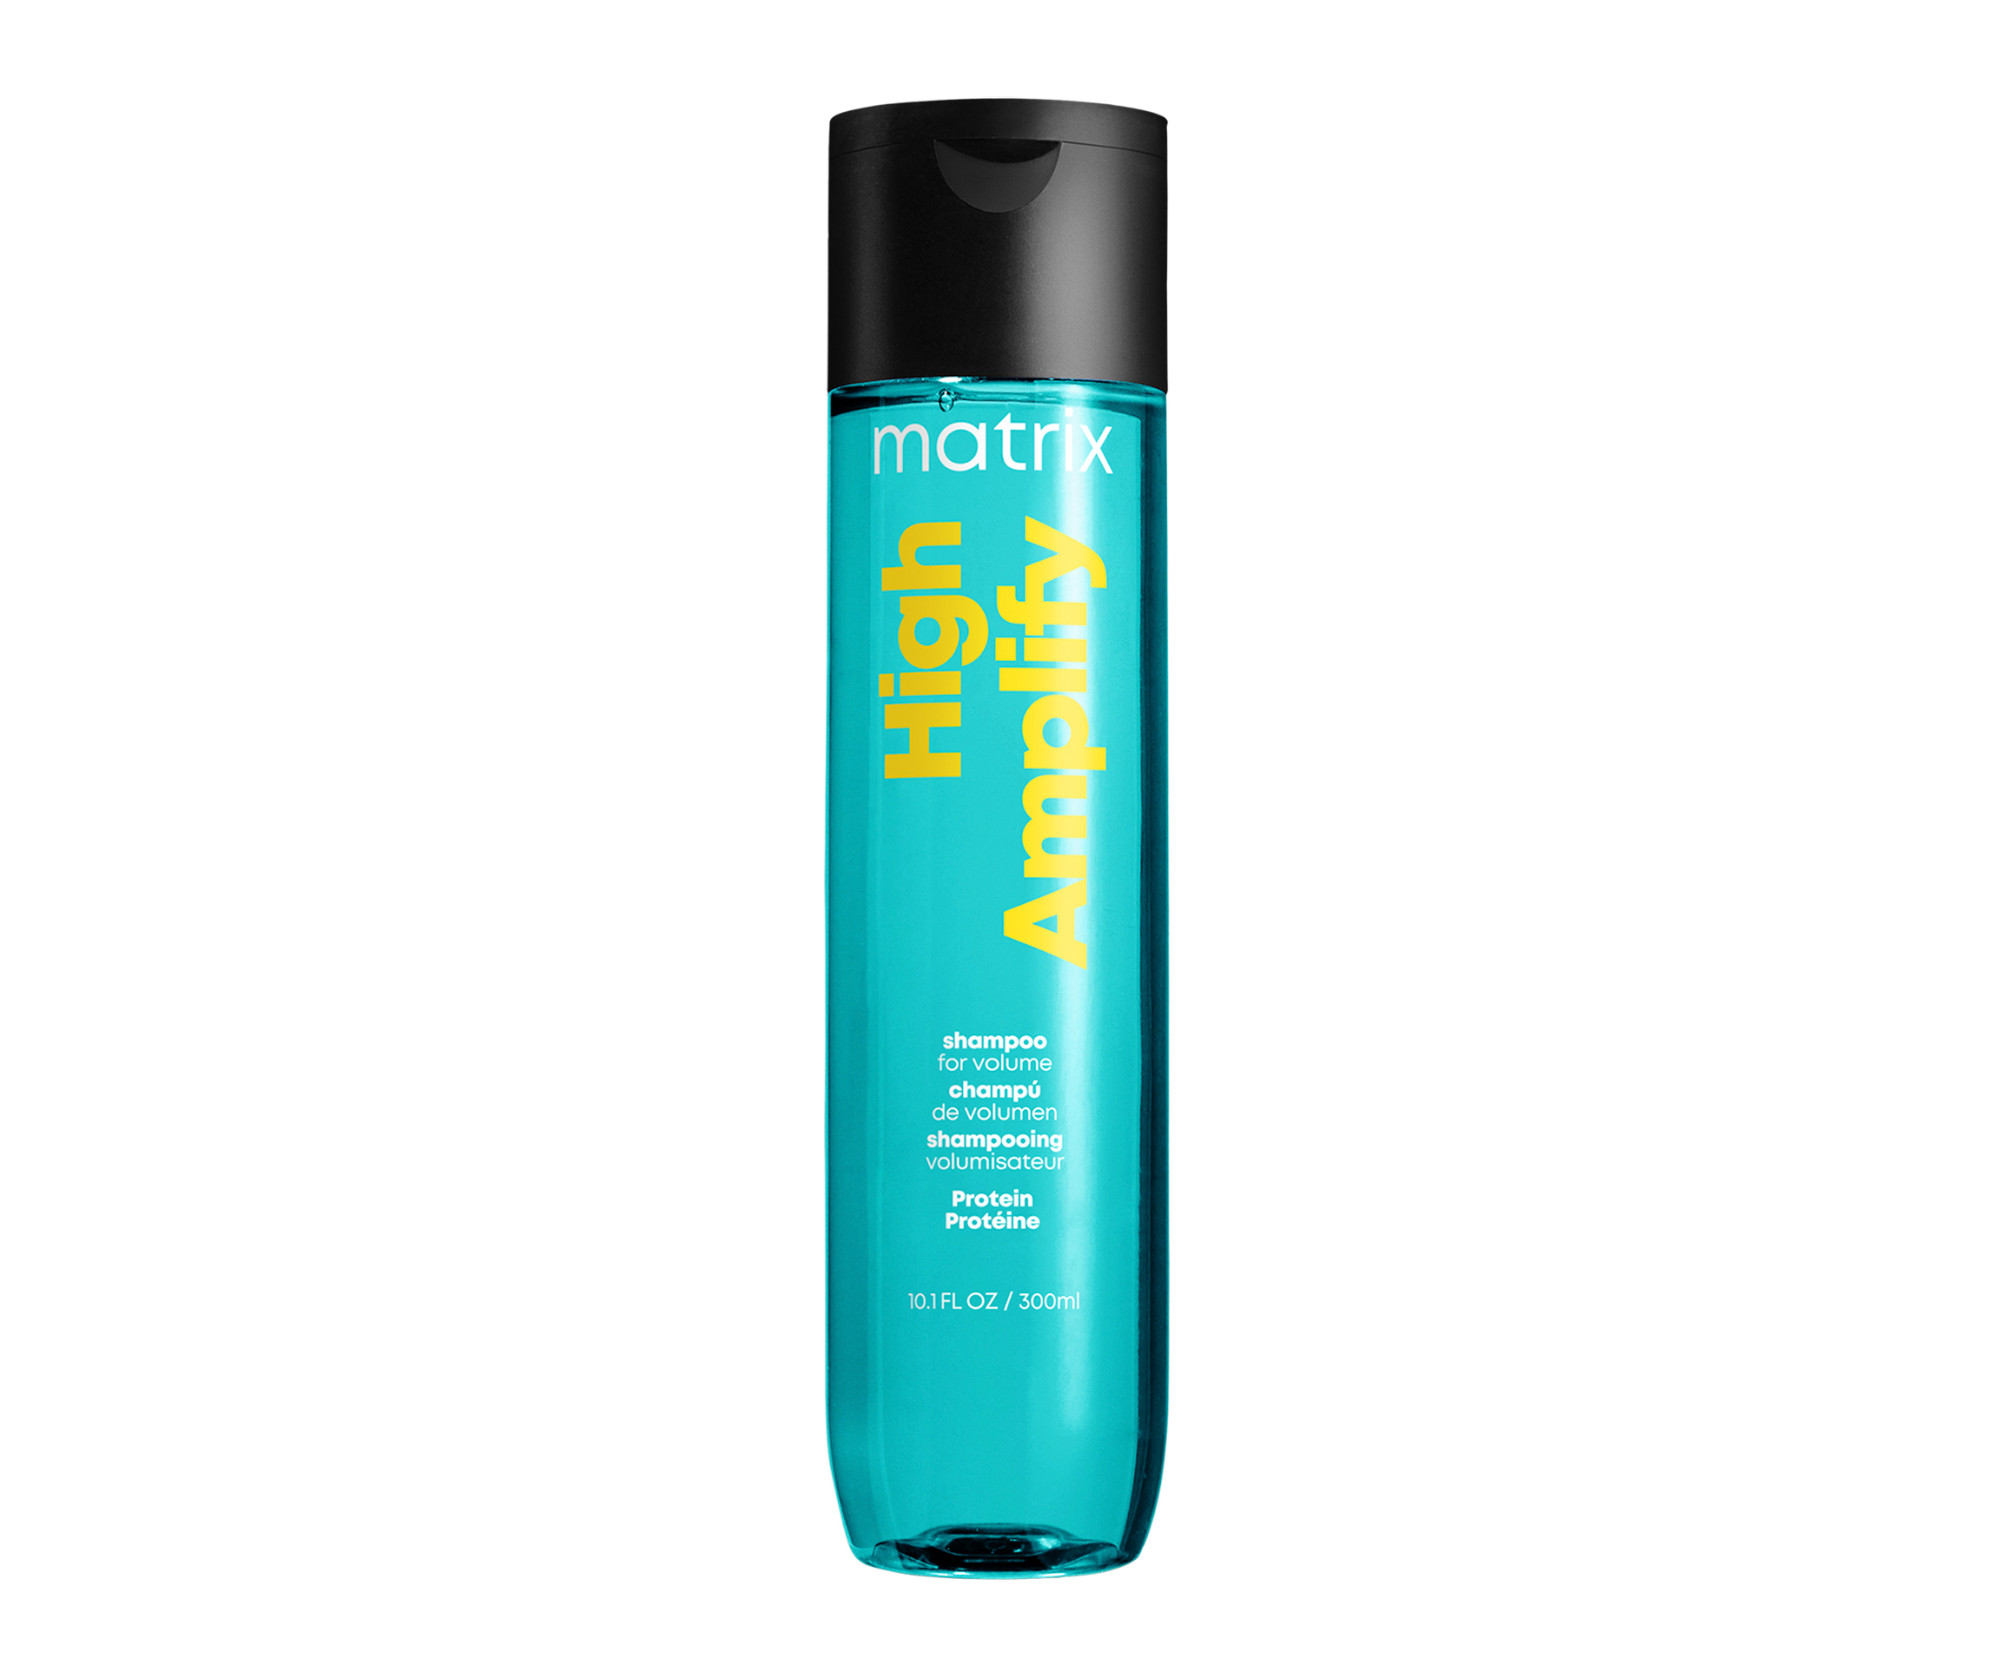 Proteinový šampon pro objem jemných vlasů Matrix High Amplify - 300 ml + dárek zdarma